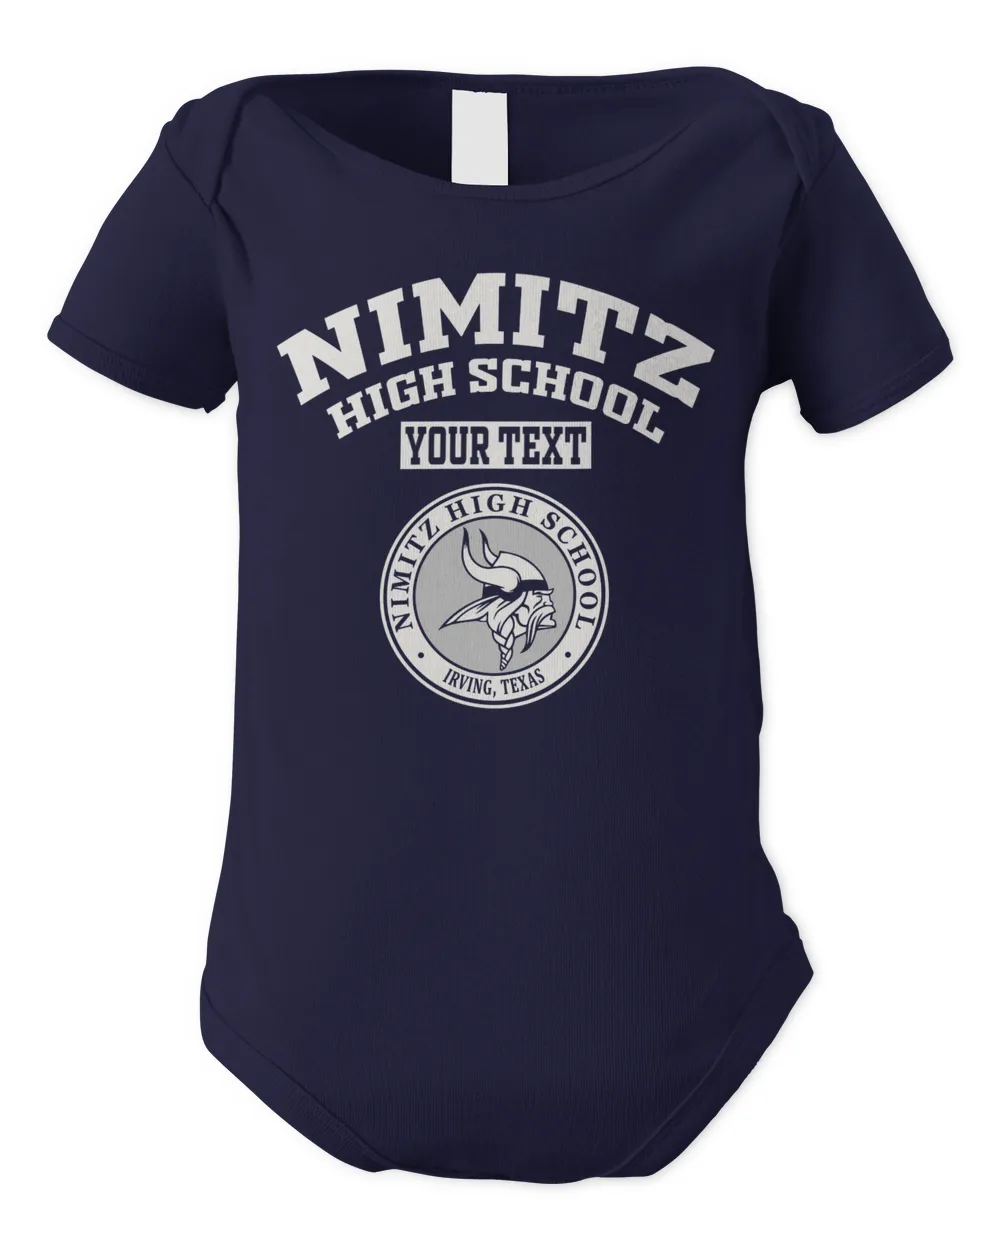 Nimitz Irving TX Alumni lgo